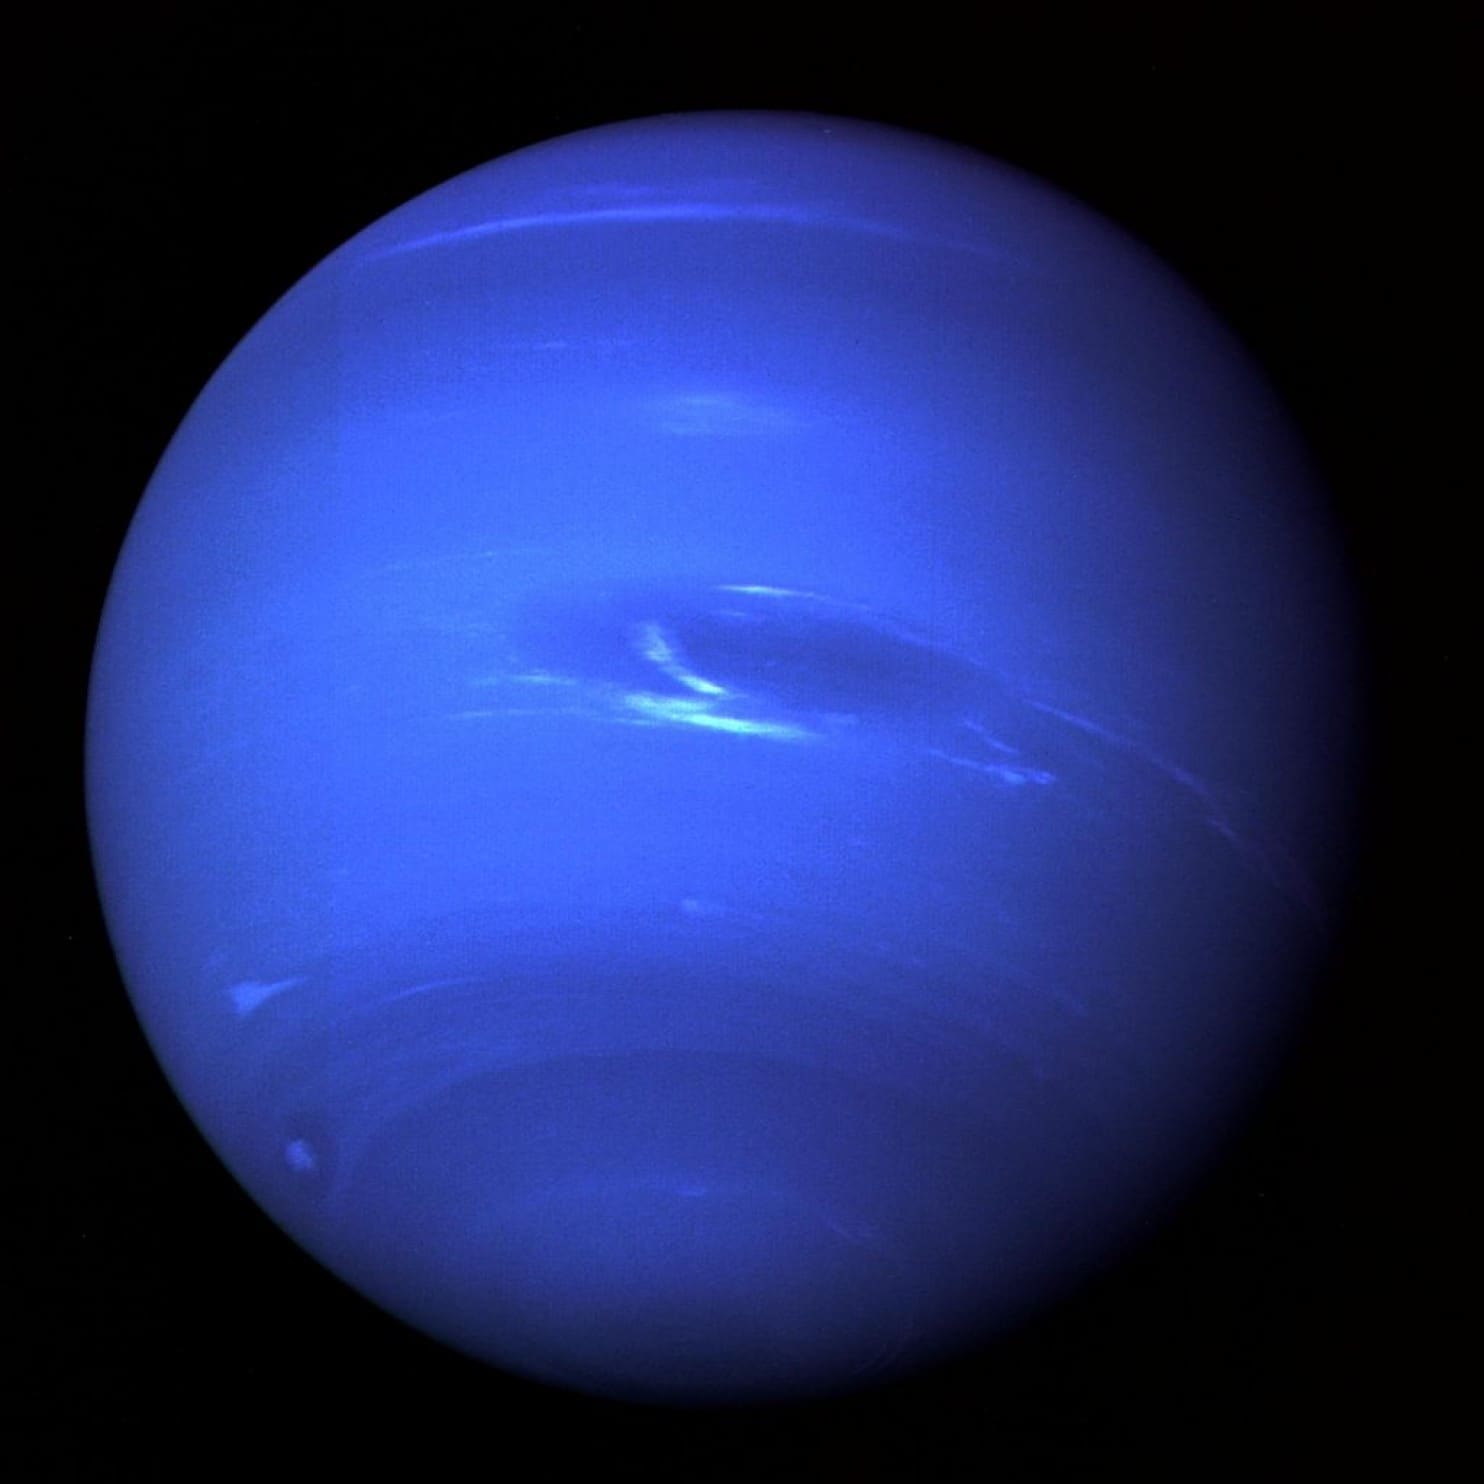 Pe Uranus şi Neptun plouă cu diamante în stare solidă